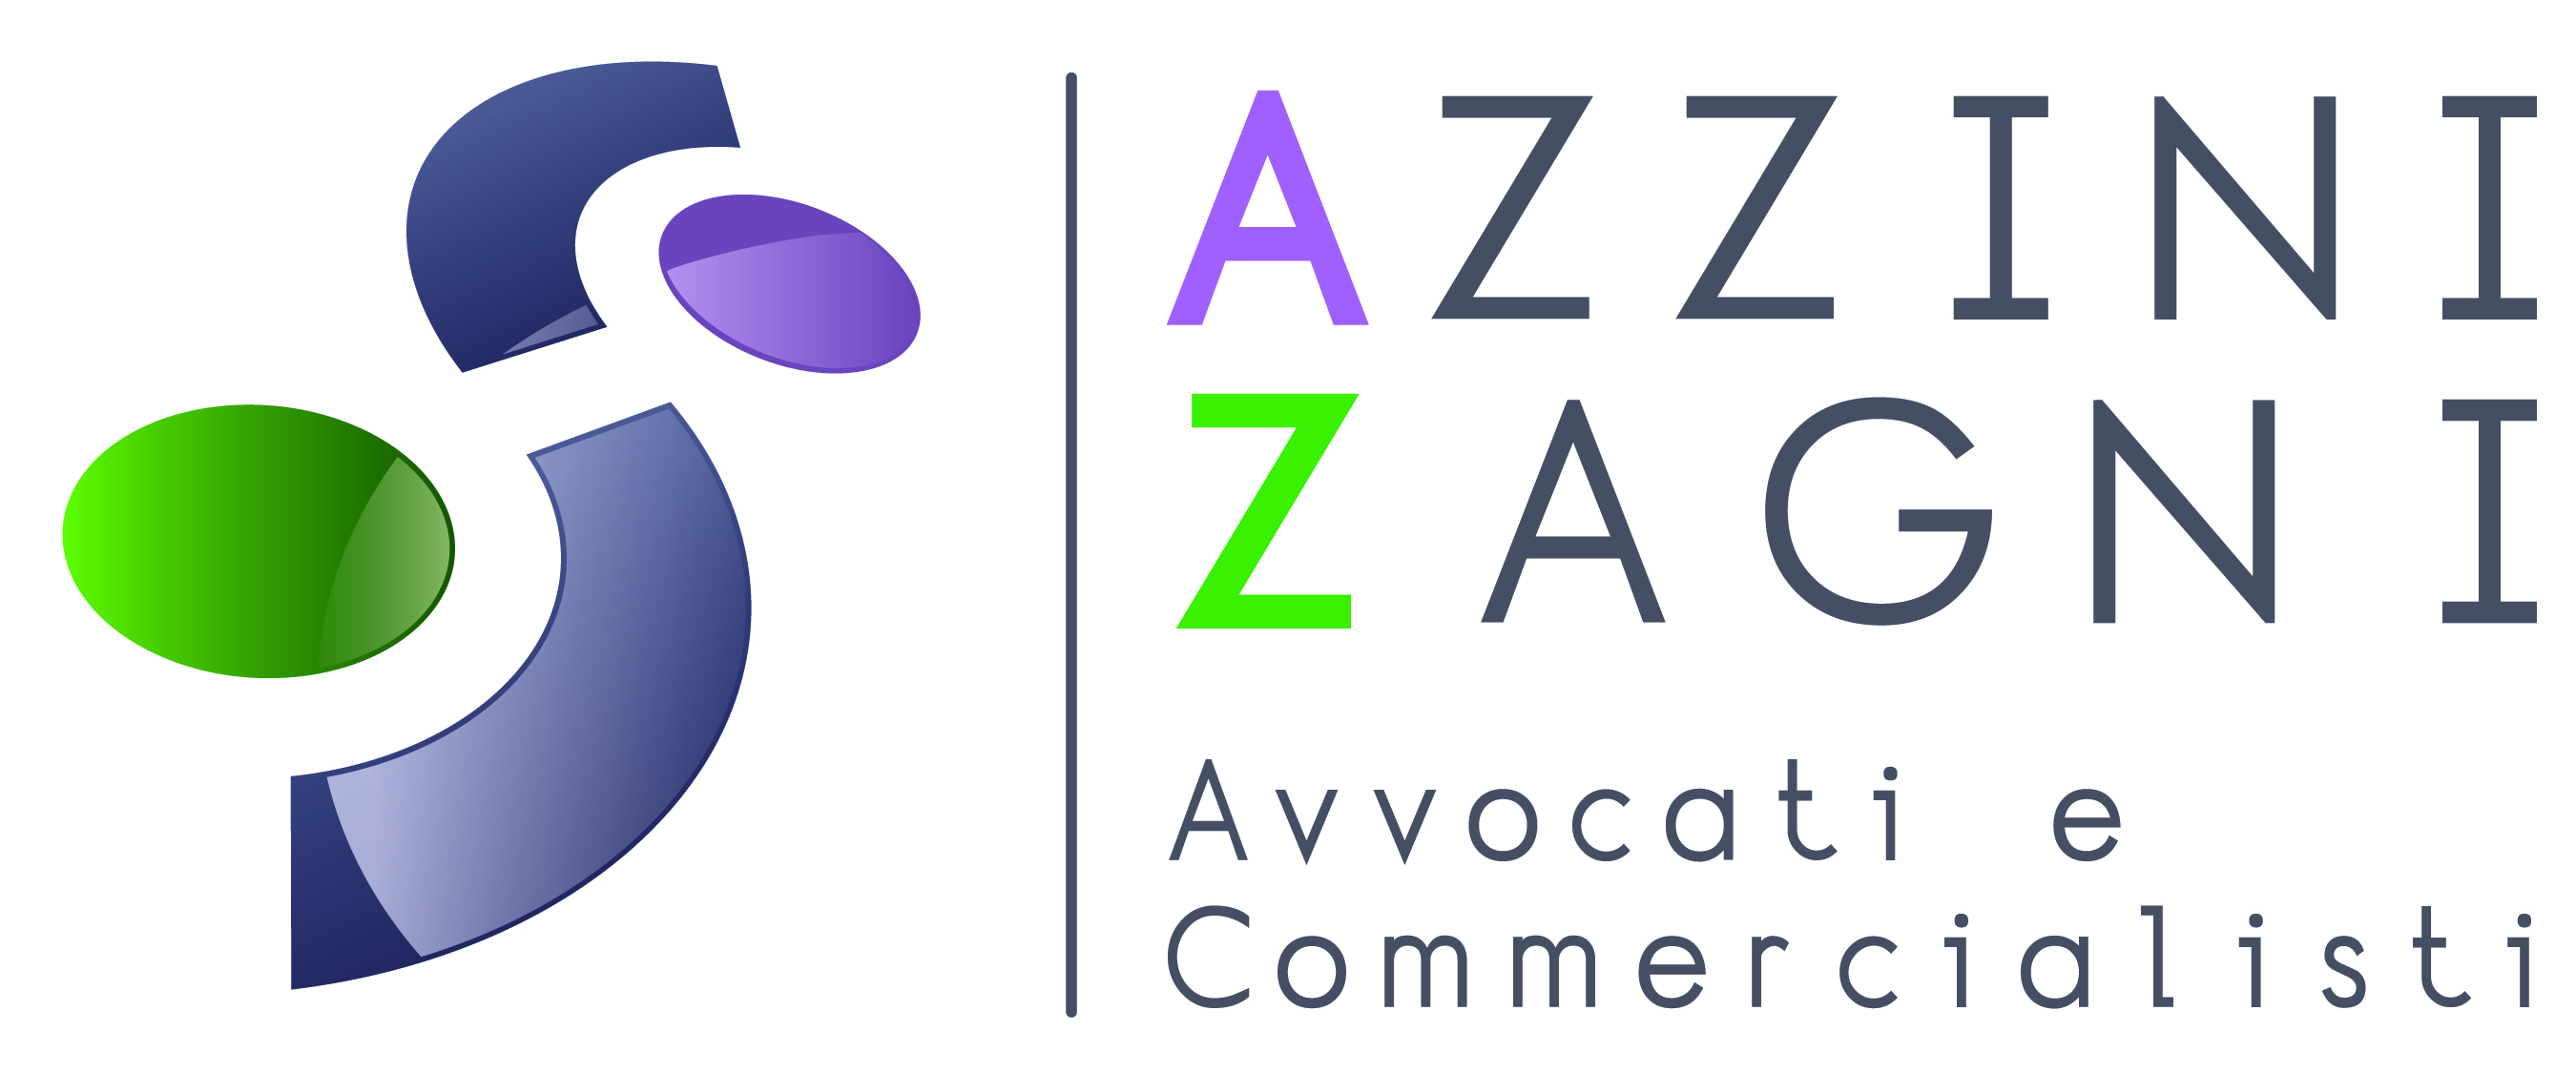 Azzini Zagni | Avvocati e Commercialisti